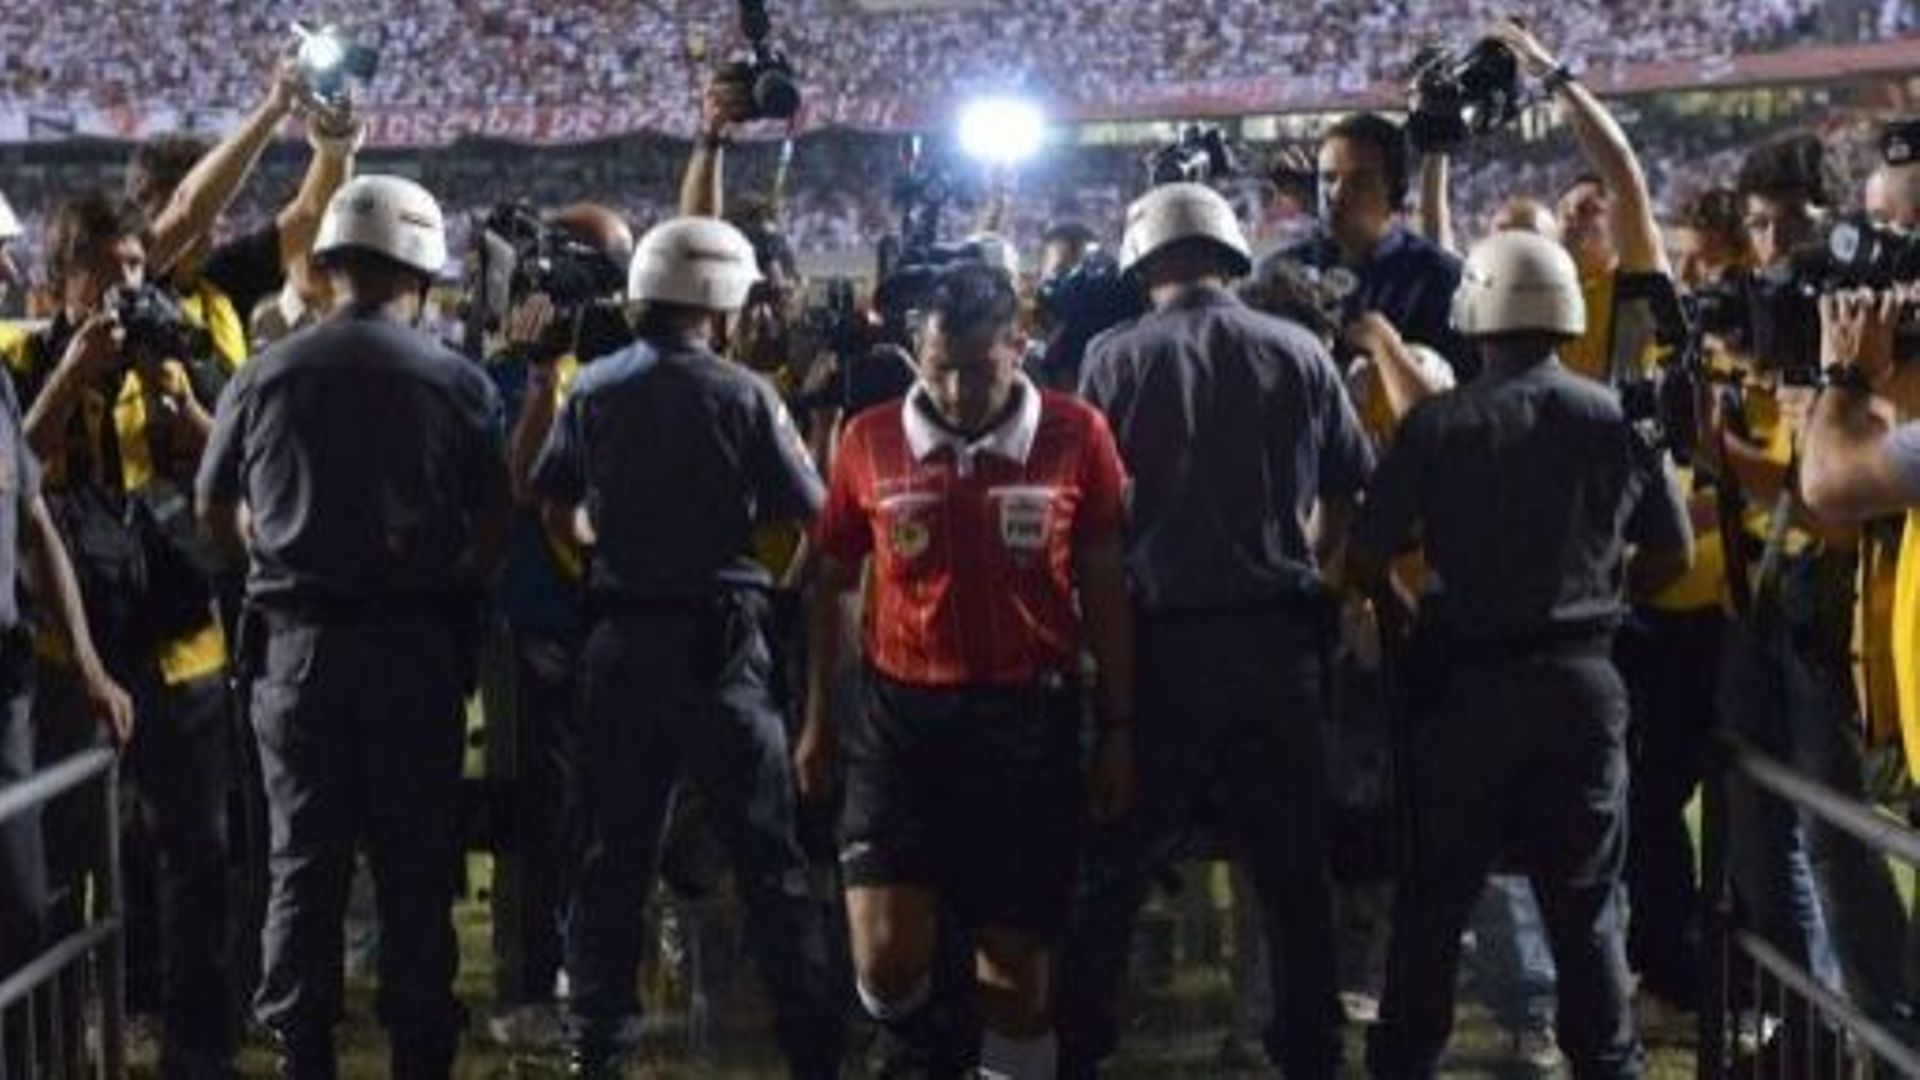 Un arbitre rejoint les vestiaires pour aller parler aux joueurs argentins de Tigre à la mi-temps de la finale de la Coupe sud-américaine face à Sao Paulo, le 12 décembre 2012 à Sao Paulo